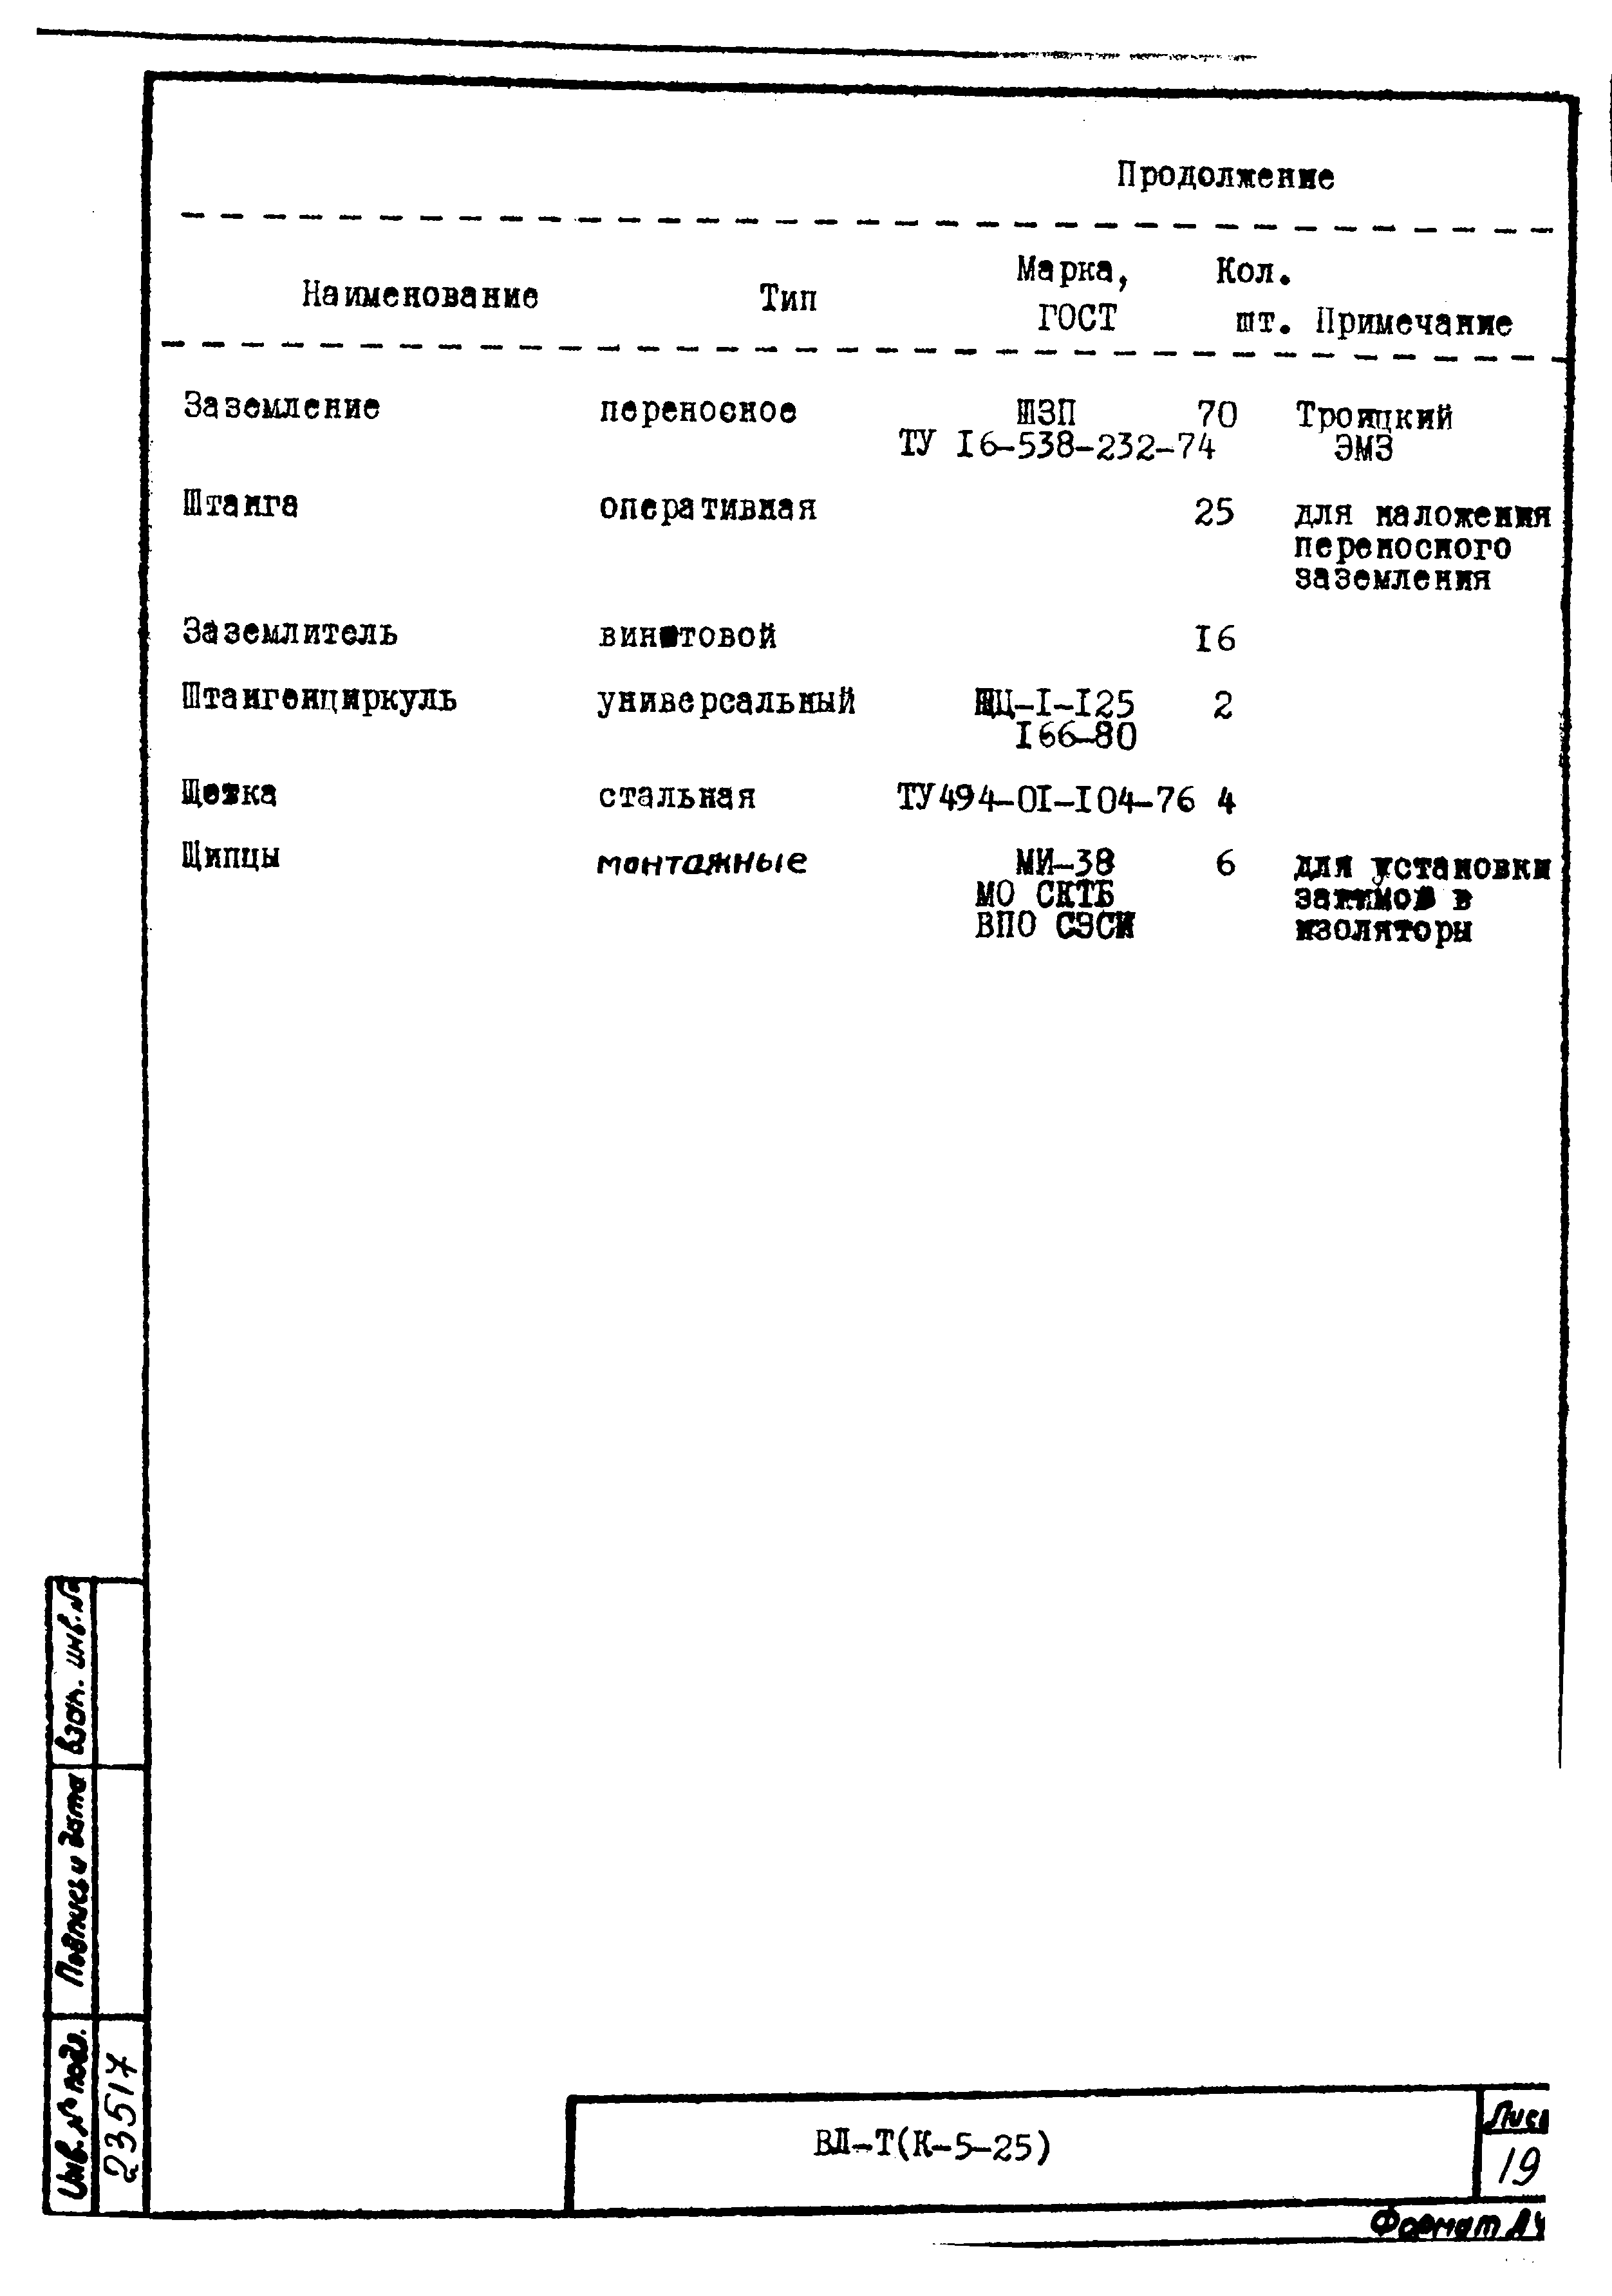 Технологическая карта К-5-25-29